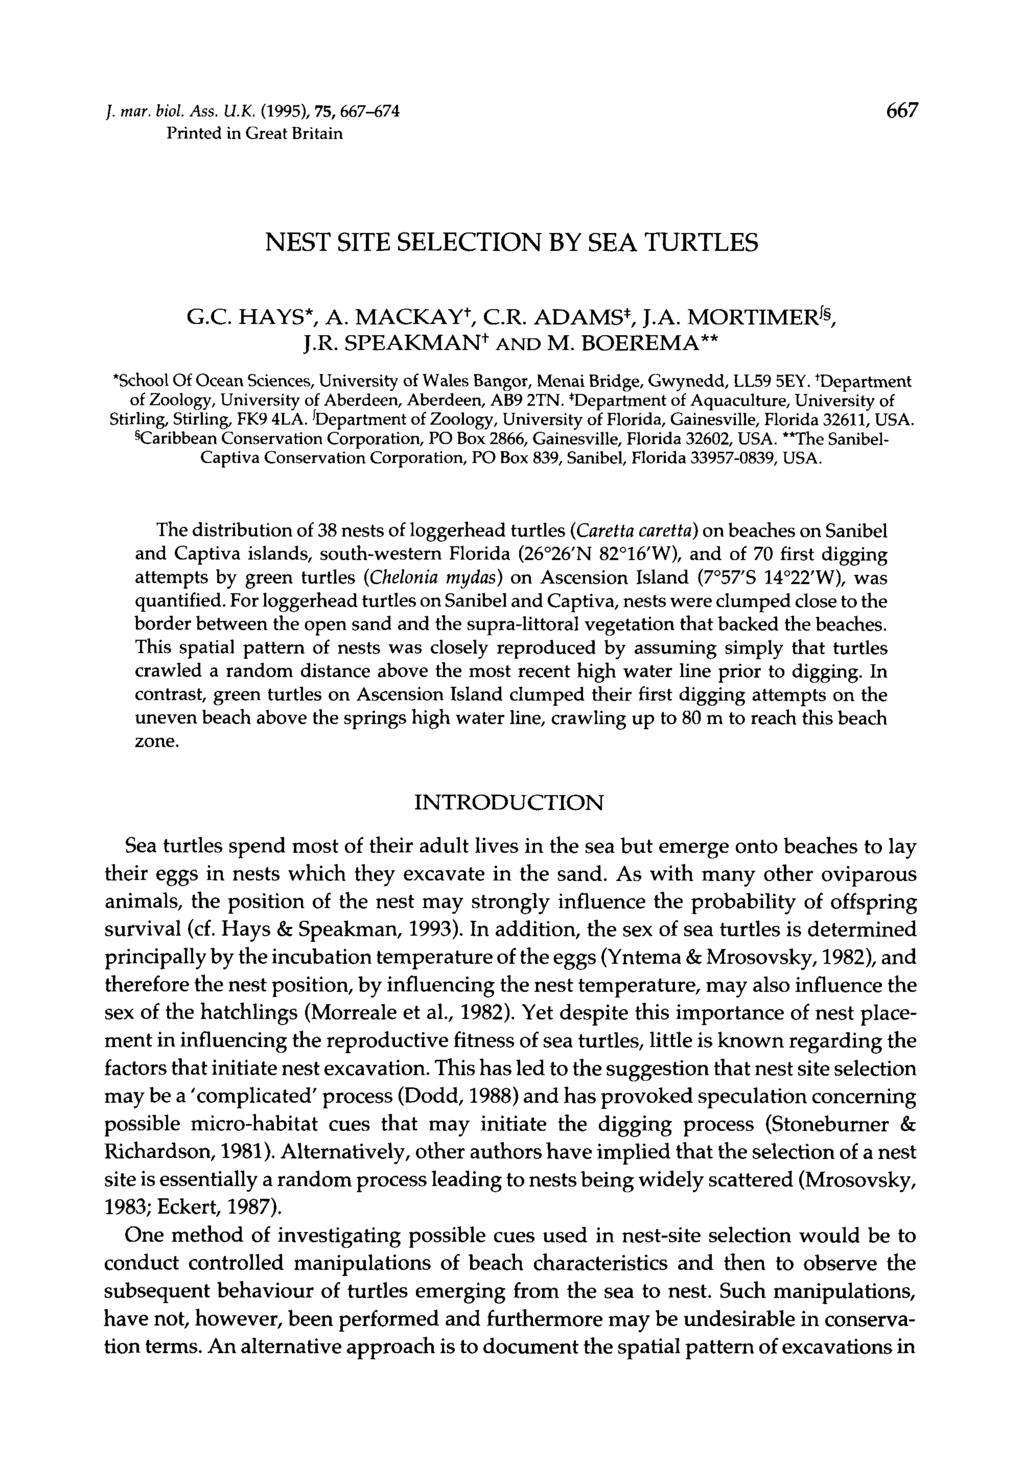 /. mar. biol. Ass. U.K. (1995), 75, 667-674 667 Printed in Great Britain NEST SITE SELECTION BY SEA TURTLES G.C. HAYS*, A. MACKAY +, C.R. ADAMS*, J.A. MORTIMER^ J.R. SPEAKMAN+ AND M.